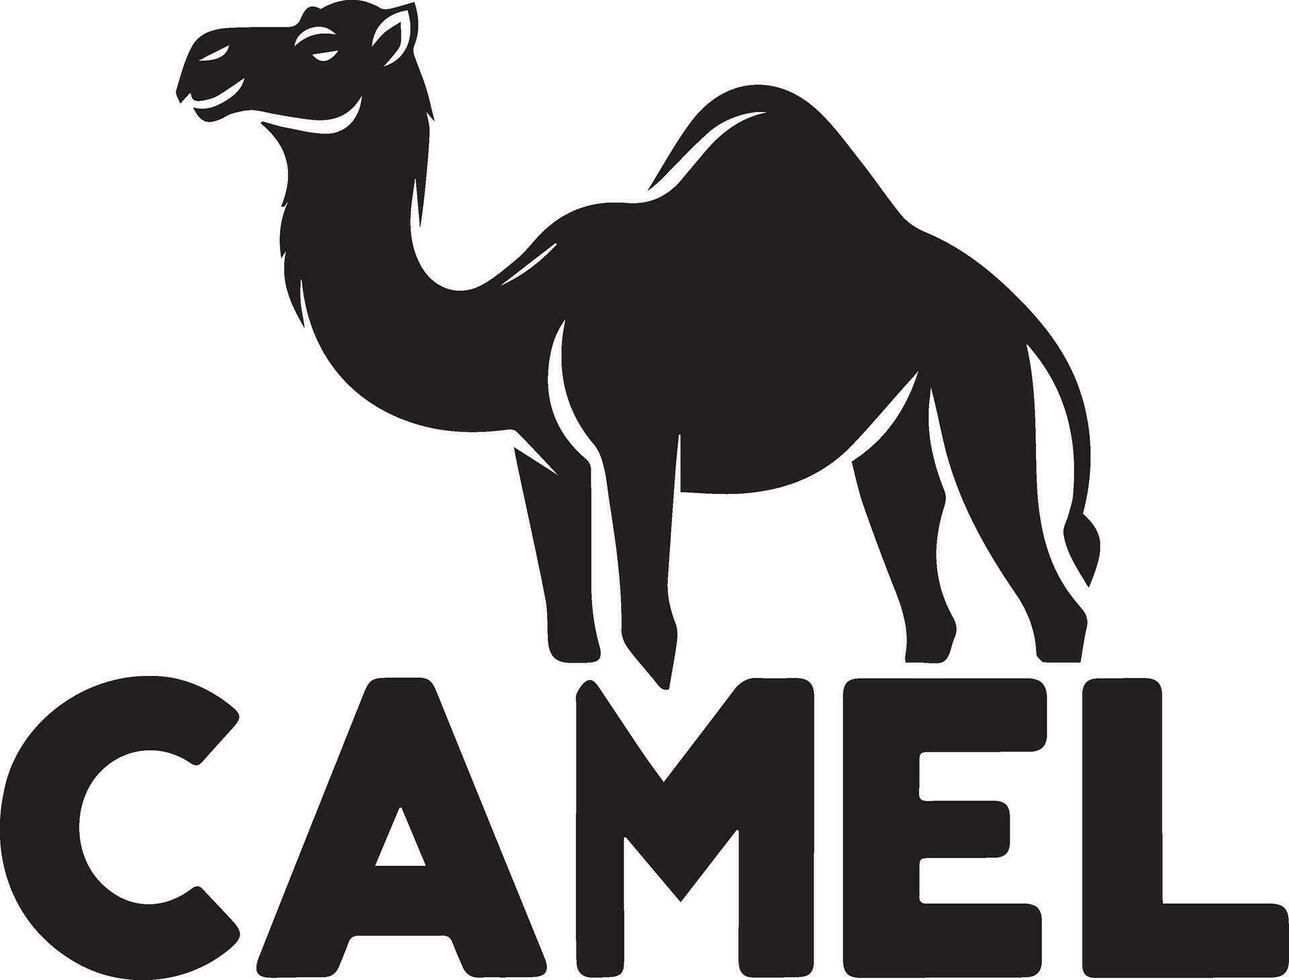 kameel logo vector kunst illustratie, kameel logo concept, kameel dier logo silhouet 8